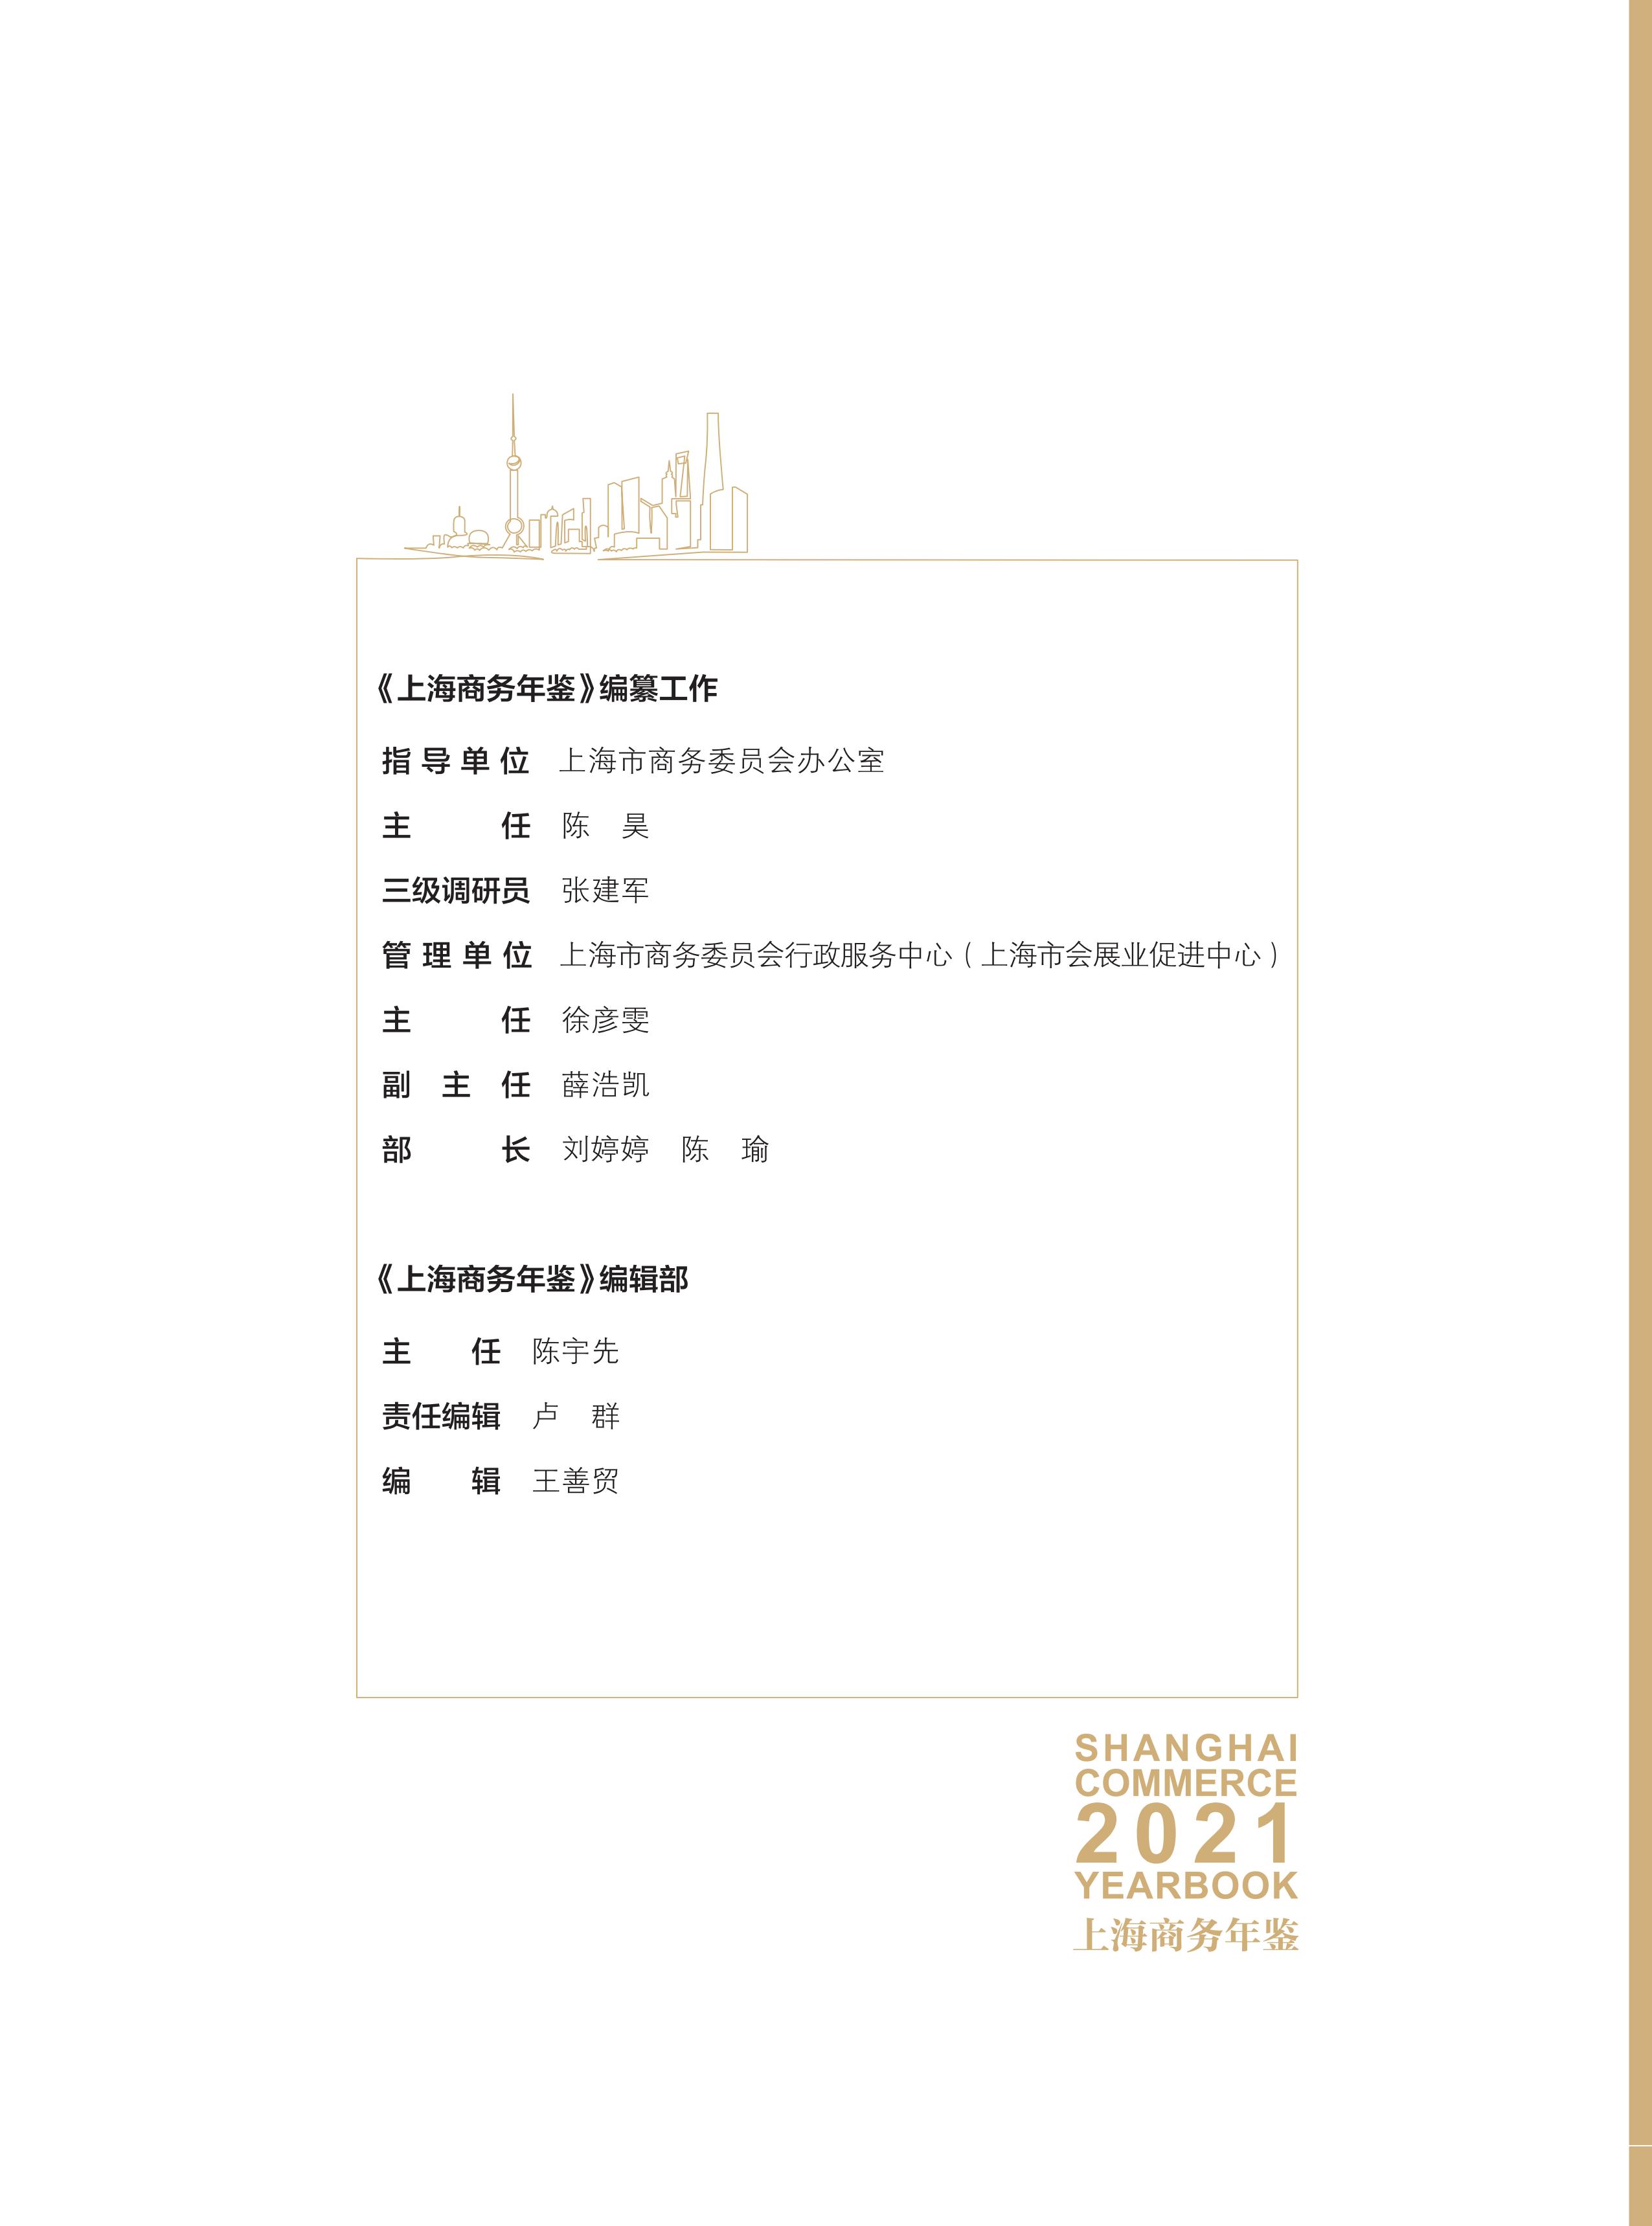 zhongban 2021商务年鉴_04.jpg